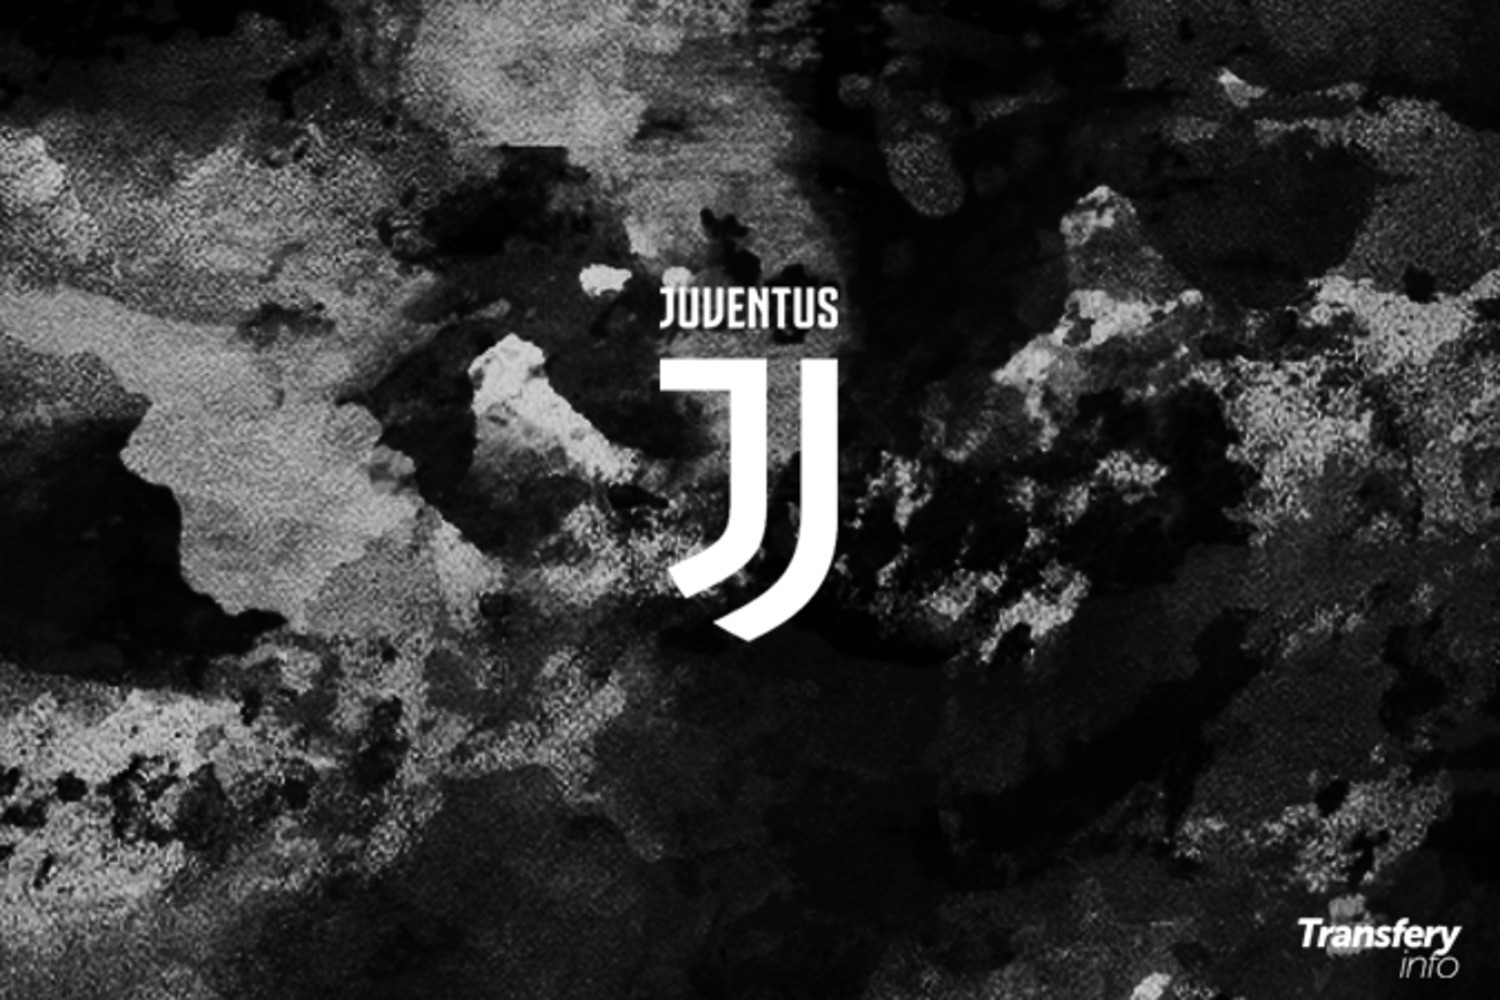 Juventus współpracuje z ligowym rywalem przy transferze rozchwytywanego prawego obrońcy